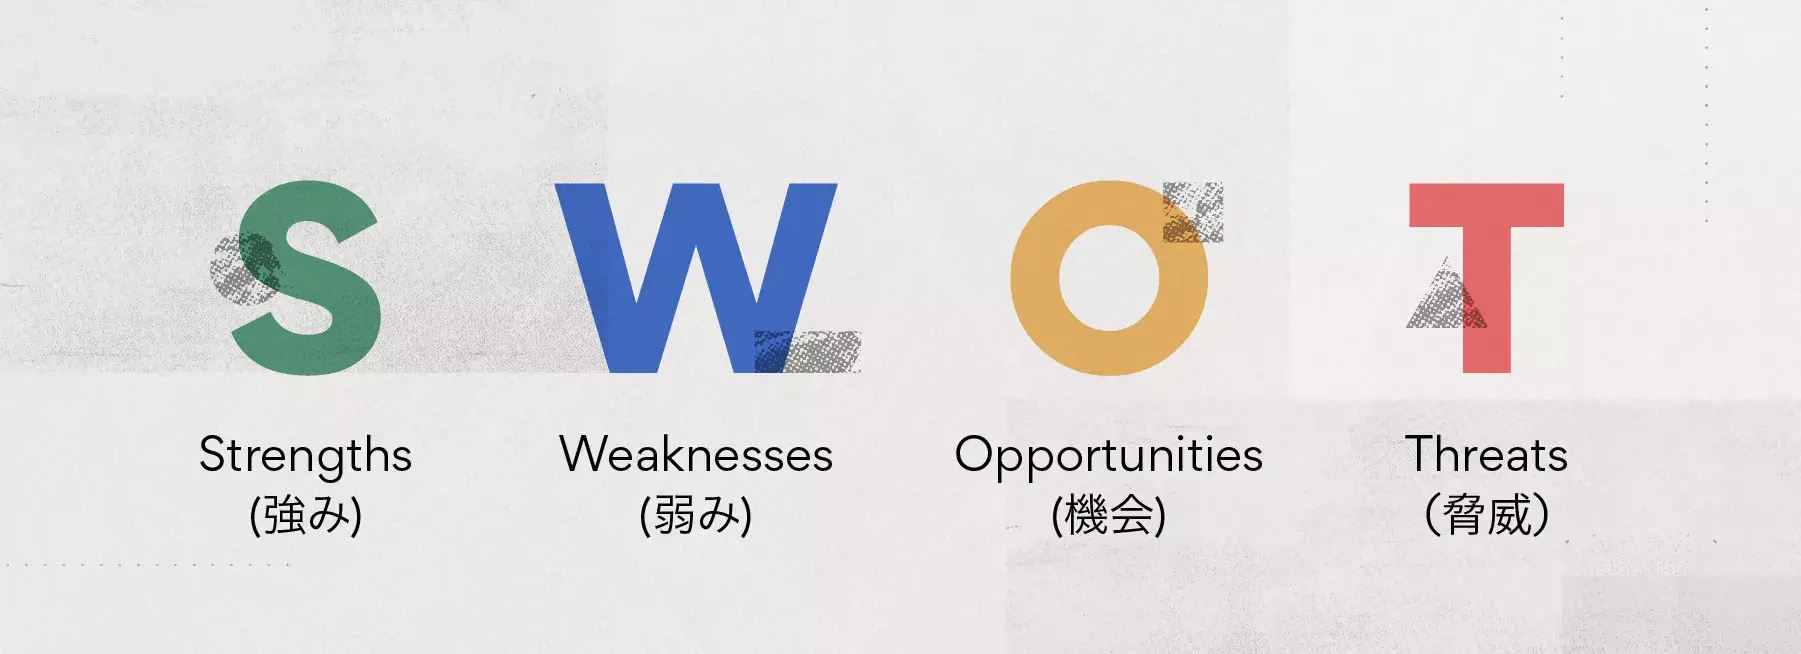 強み (Strengths)、弱み (Weaknesses)、機会 (Opportunities)、脅威 (Threats)